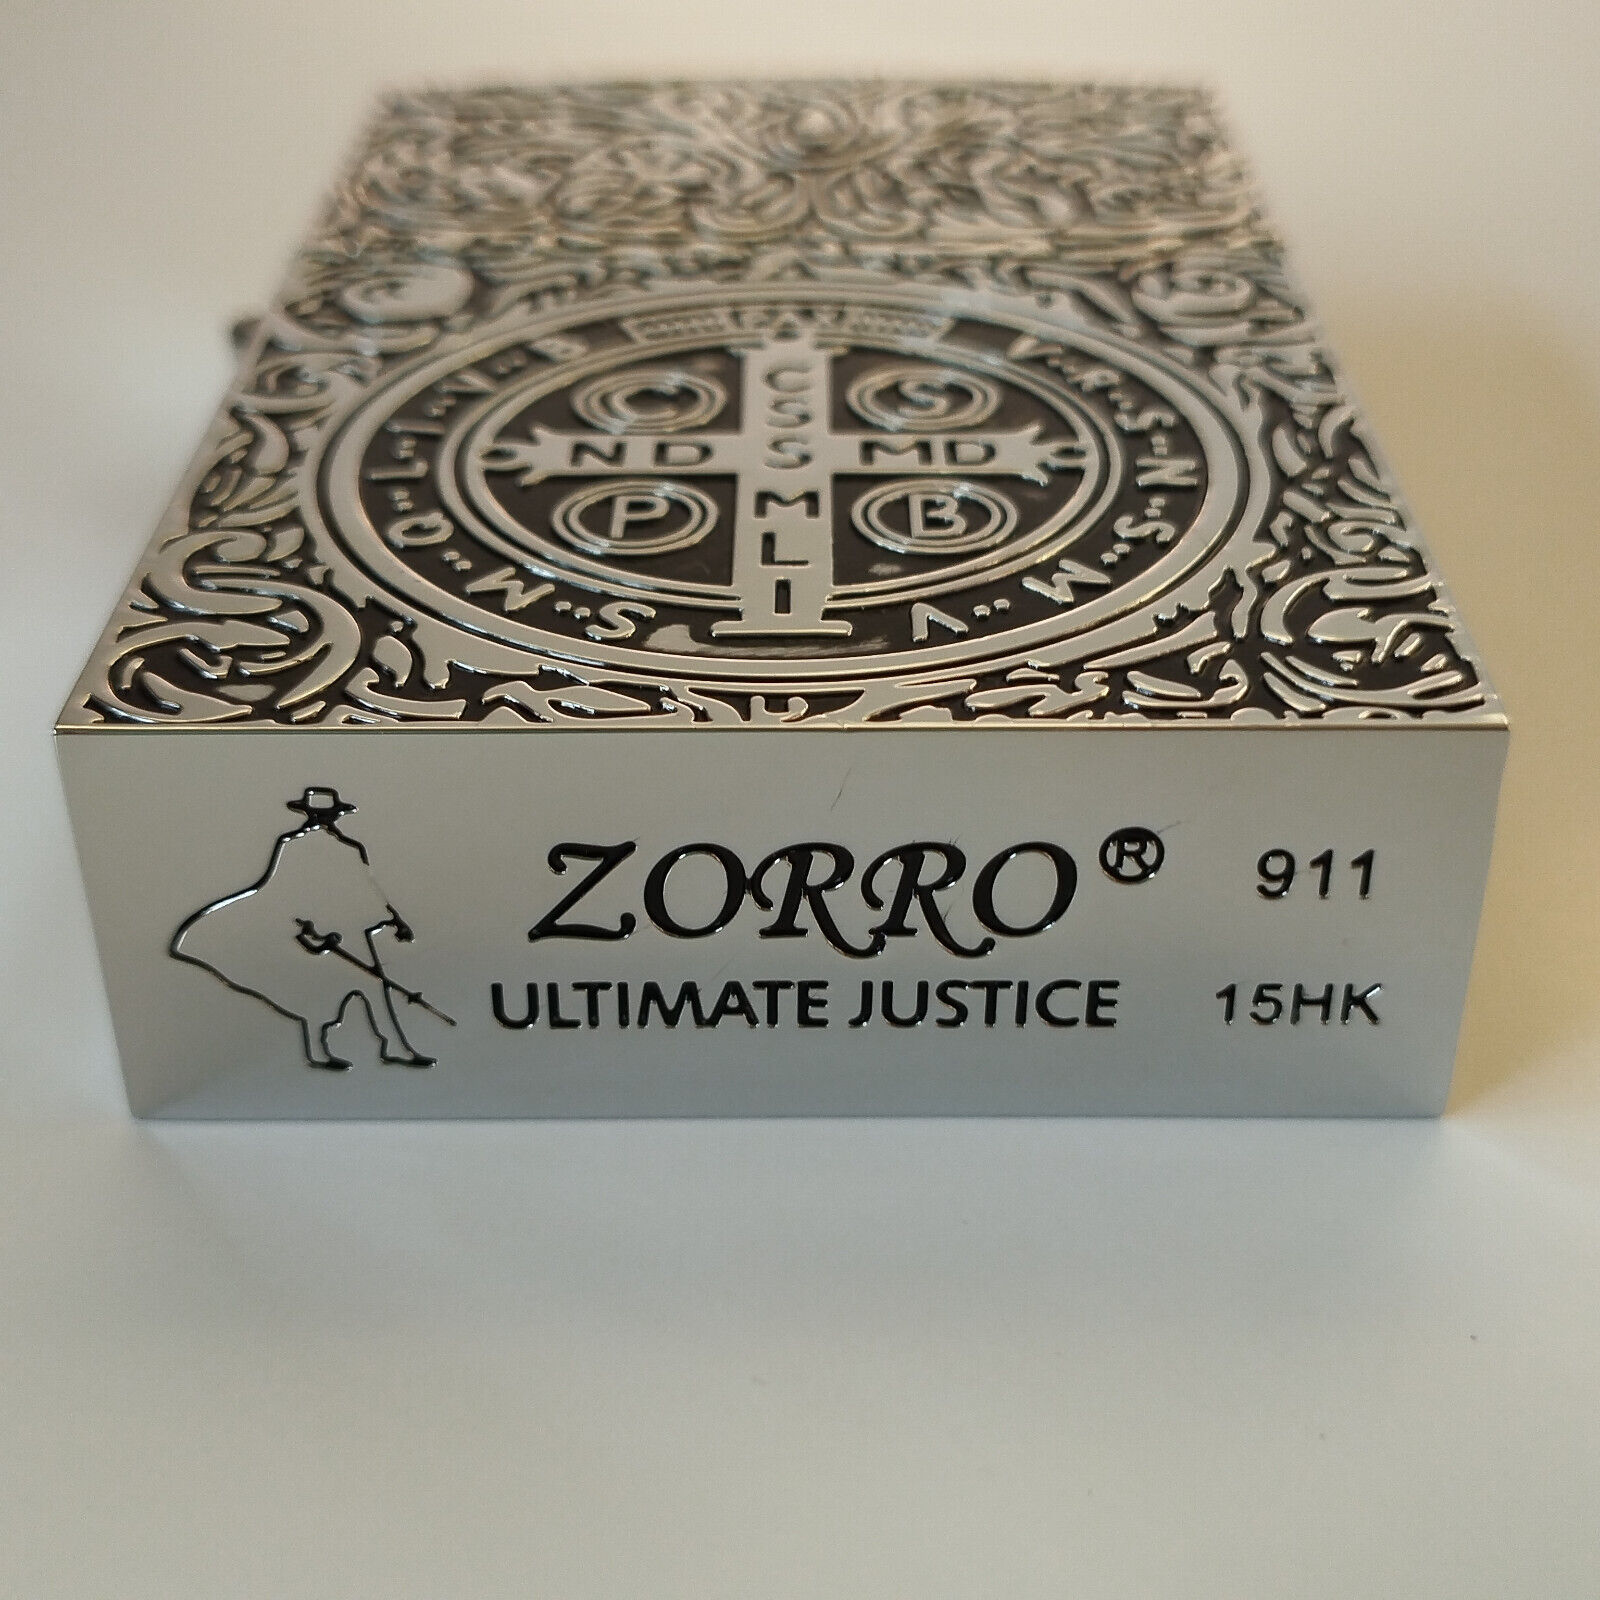 Zorro 911 Constantine Silver Lighter (with Gift Box) - 1:1 Movie Replica